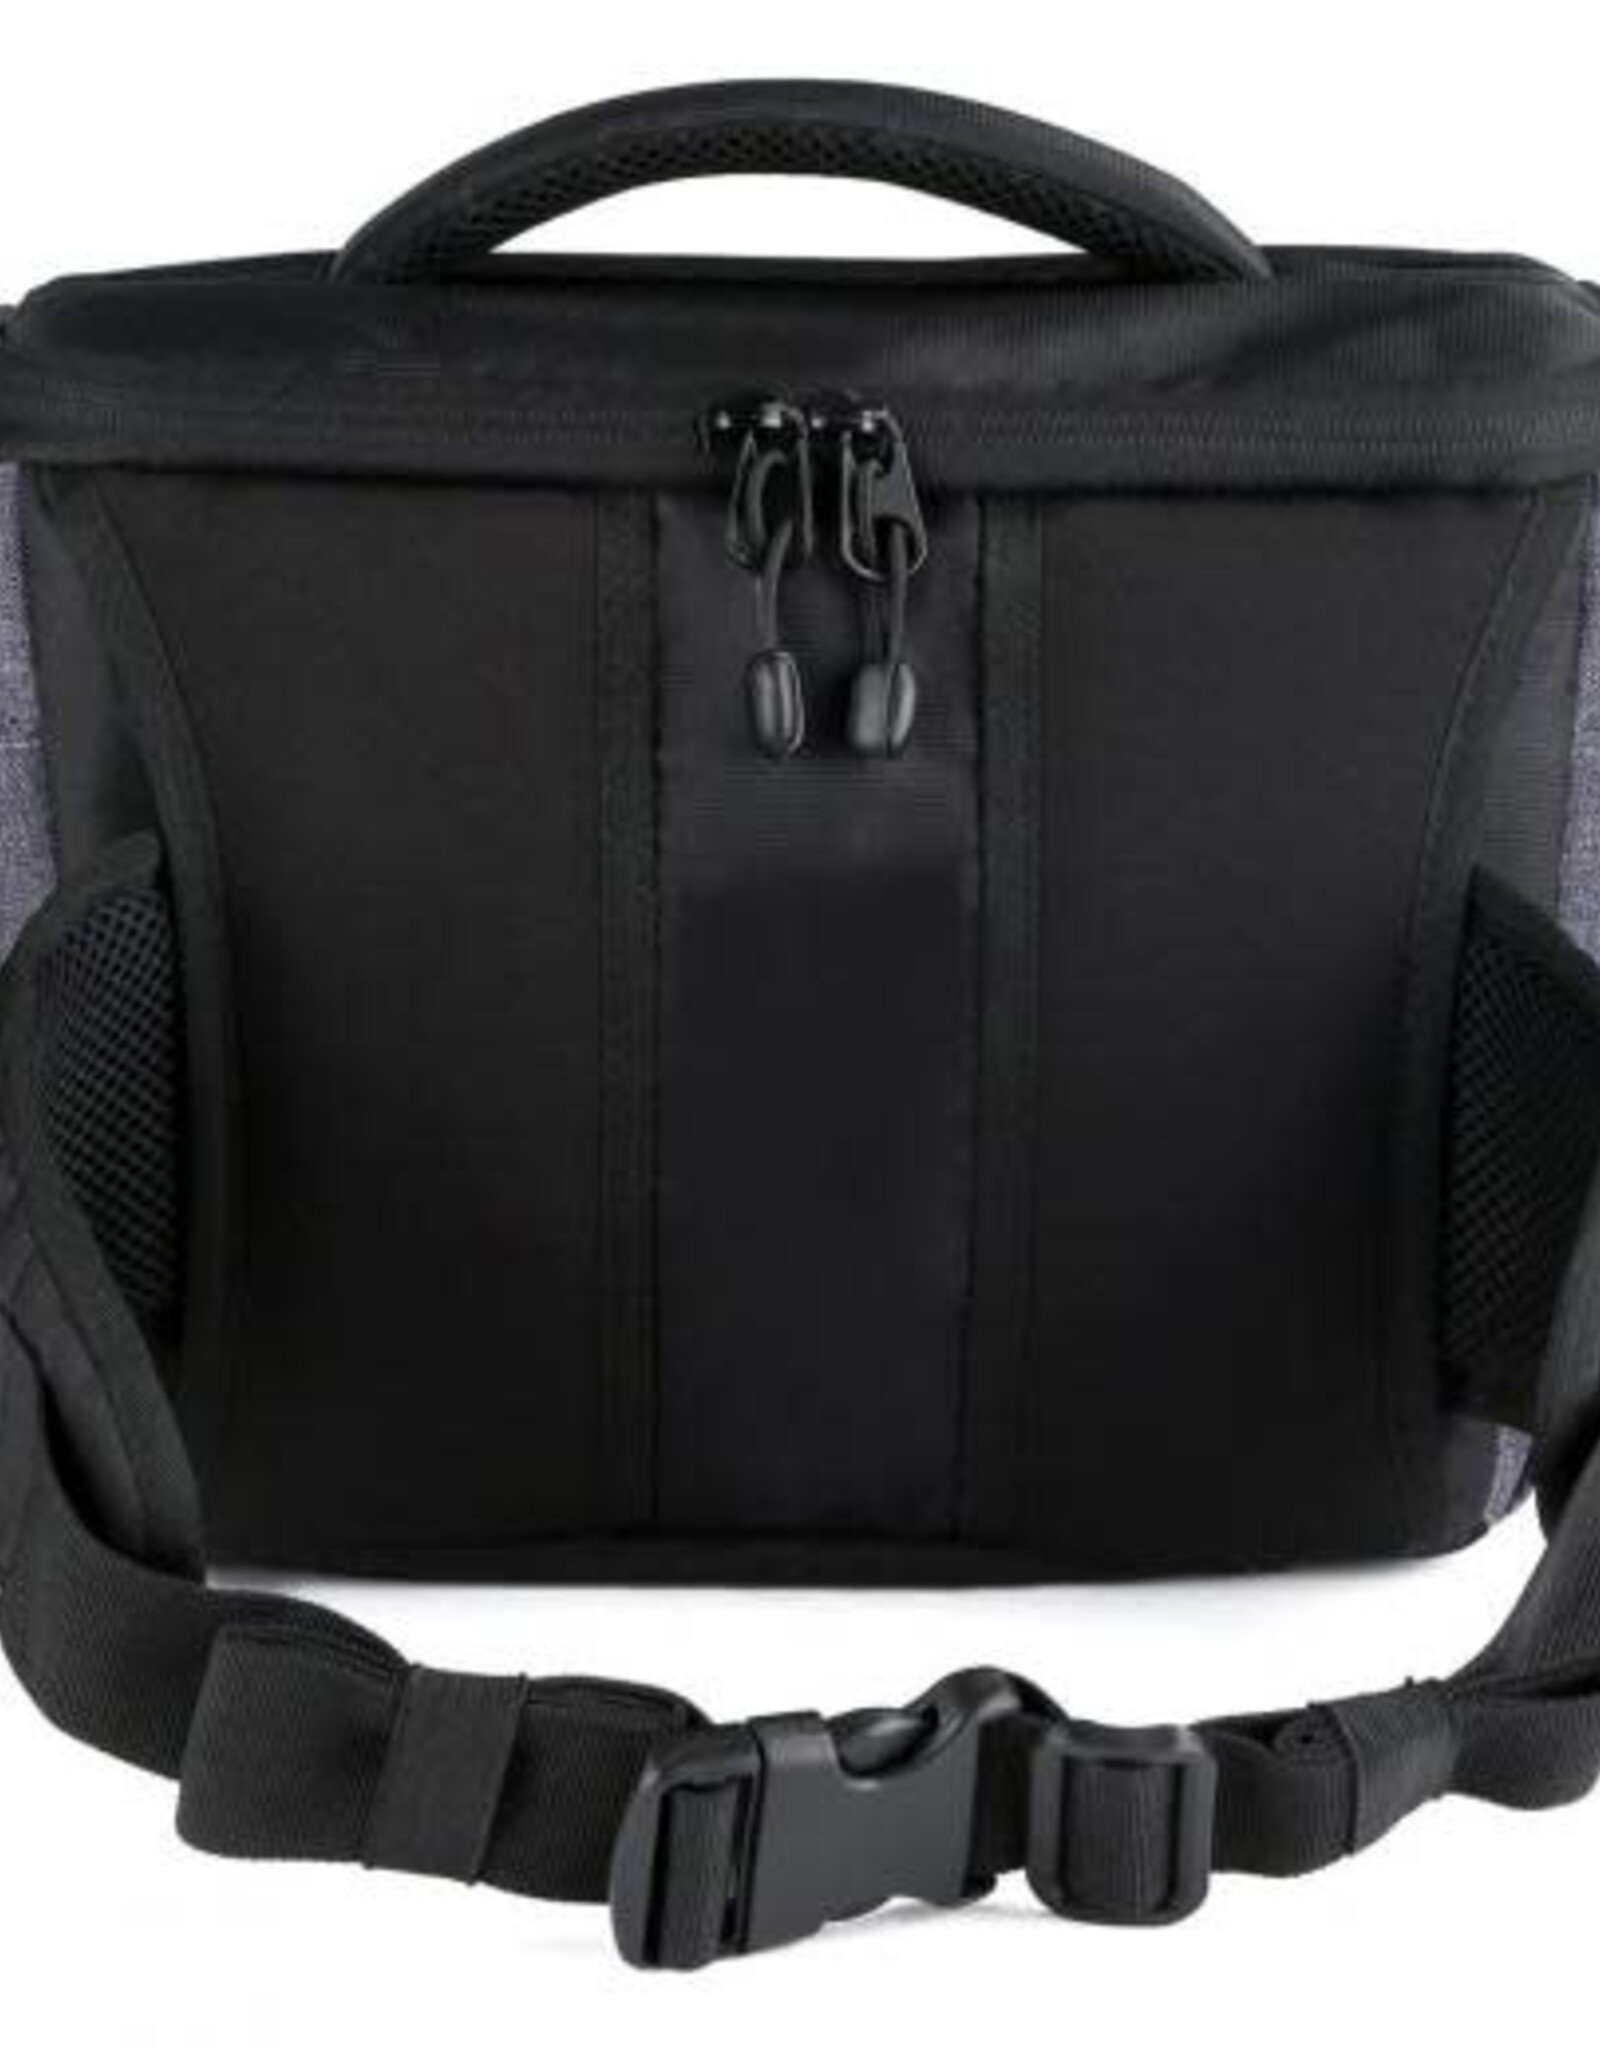 K&F Concept K&F Beschoi Compact Shoulder Bag Grey